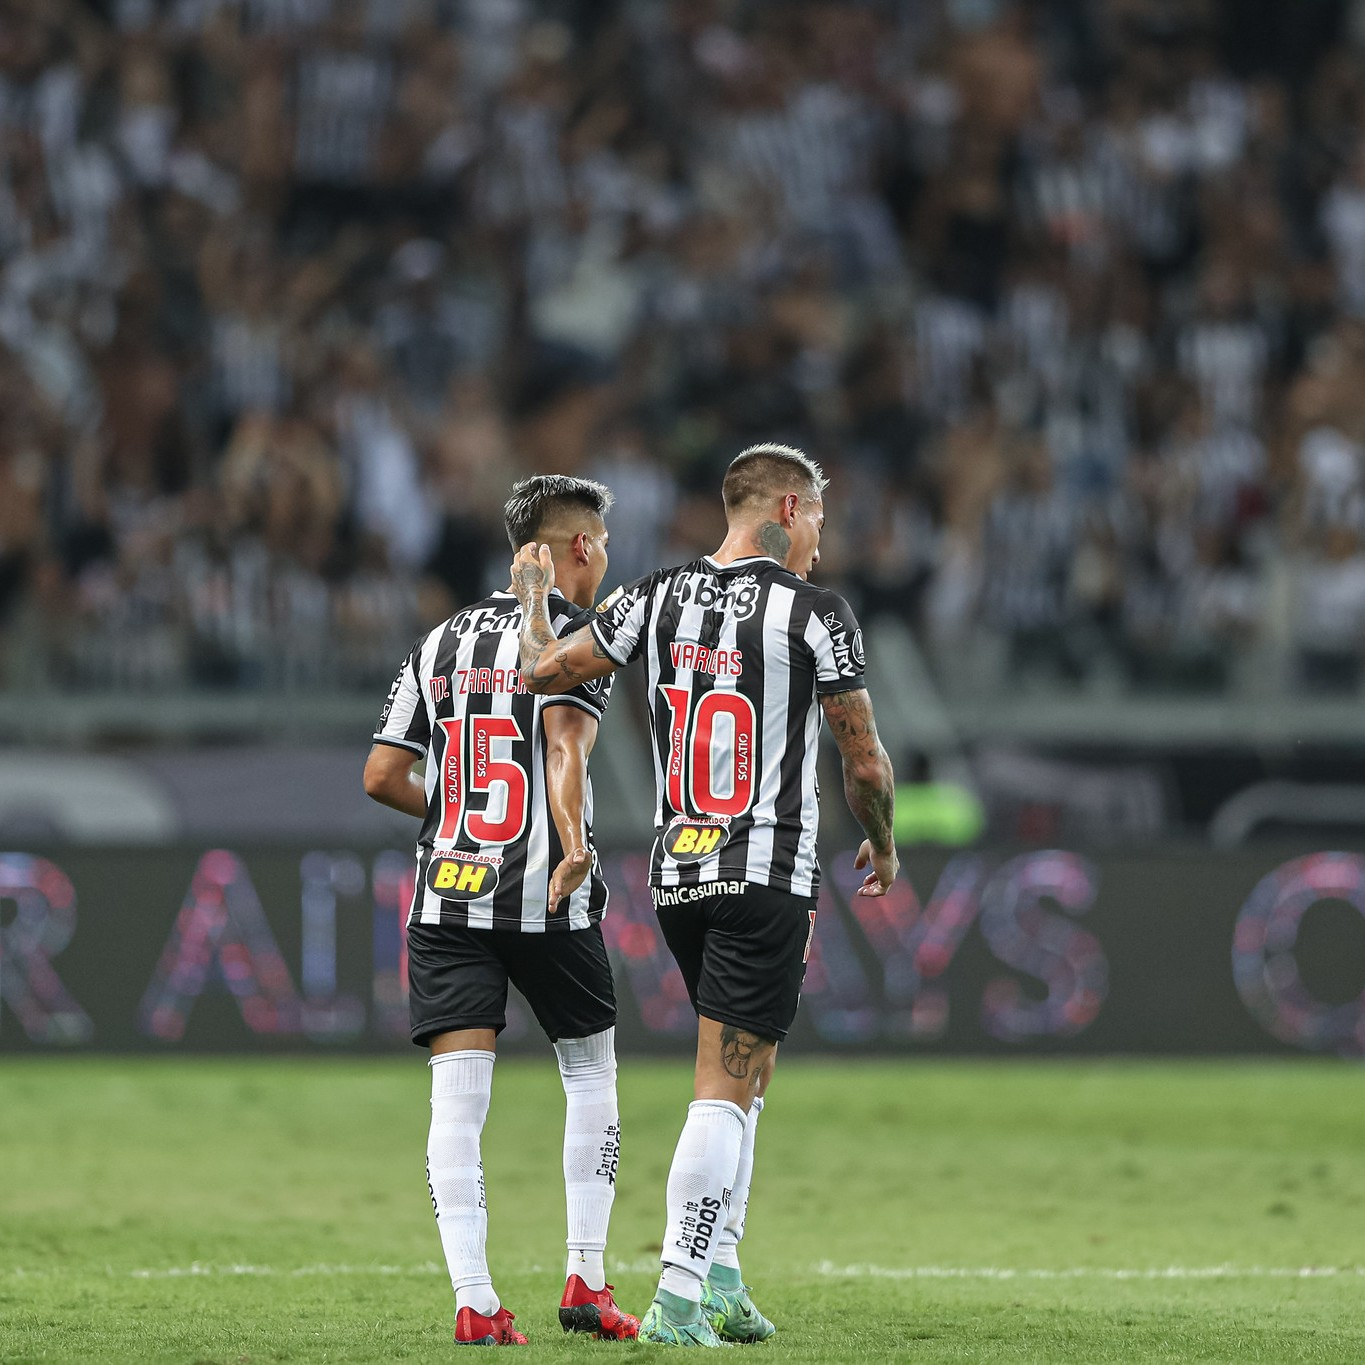 GE Atlético-MG #138 - Por que o Galo saiu da Libertadores? Reação da torcida no fim indica manutenção do apoio incondicional?